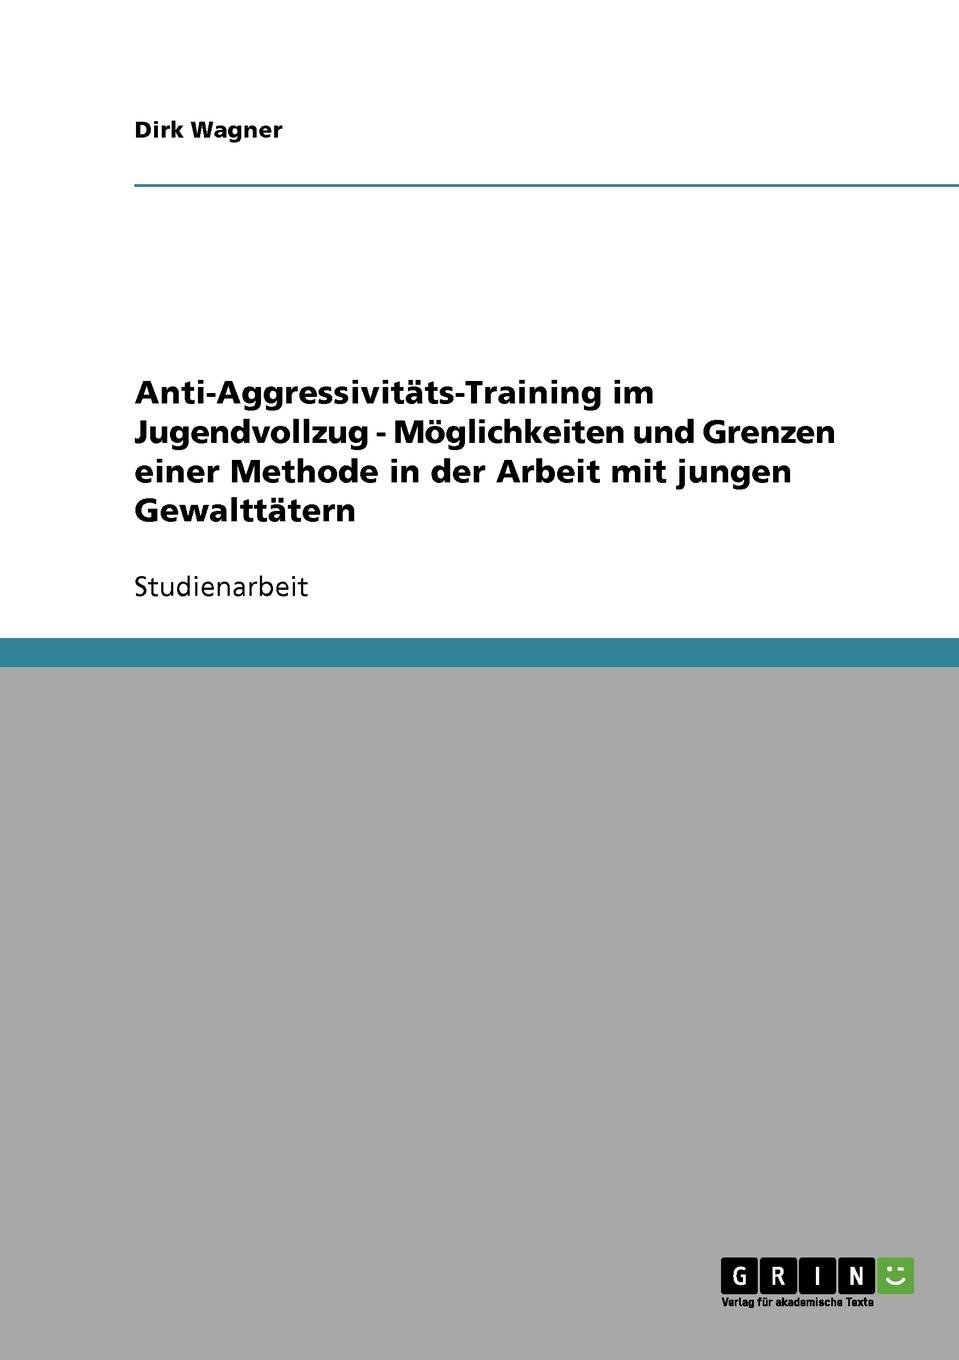 Anti-Aggressivitats-Training im Jugendvollzug - Moglichkeiten und Grenzen einer Methode in der Arbeit mit jungen Gewalttatern